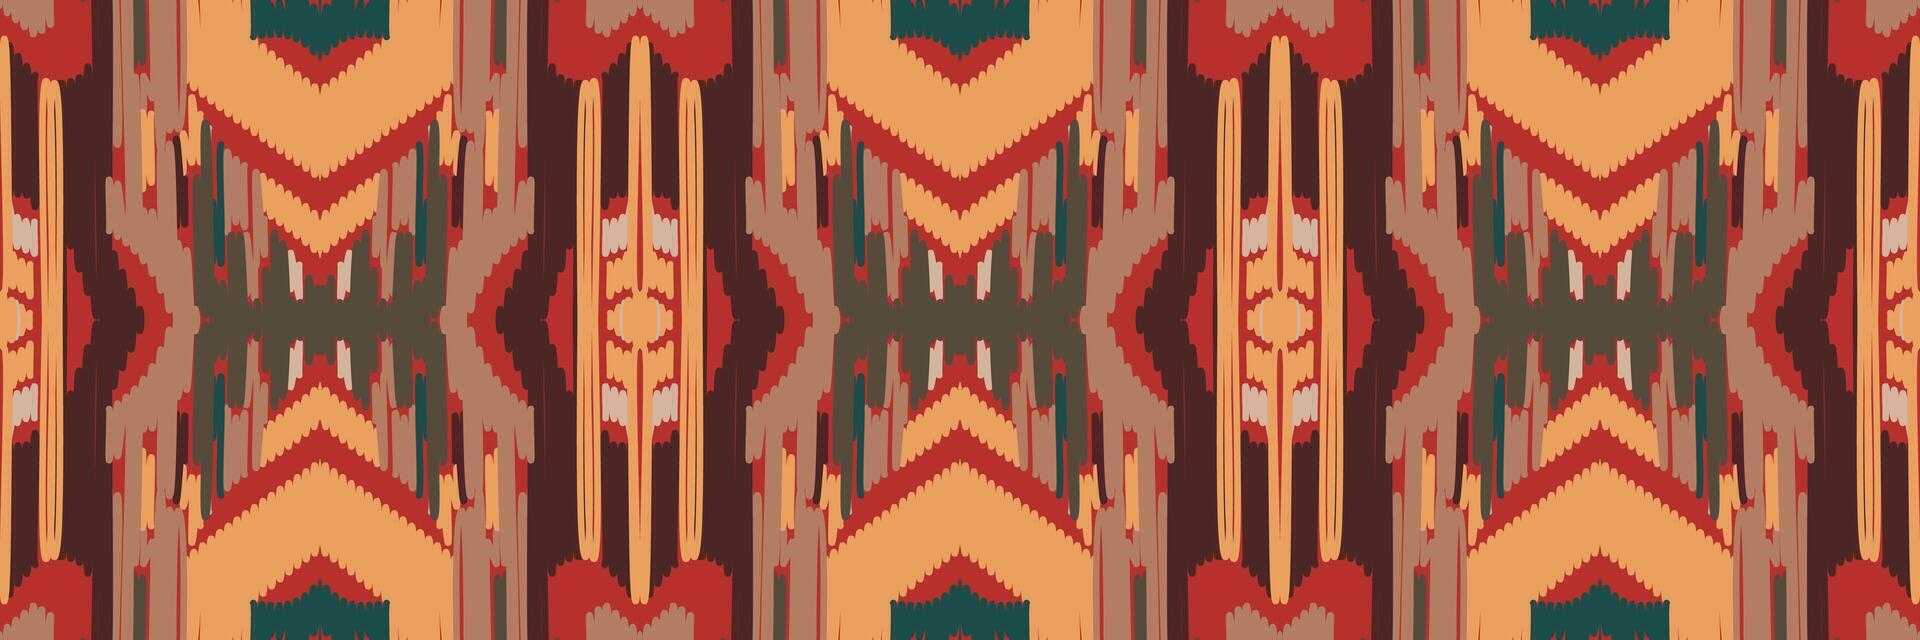 ikat mönster i tribal. geometriska etniska traditionella. mexikansk randig stil. design för bakgrund, tapeter, vektorillustration, tyg, kläder, batik, matta, broderi. vektor